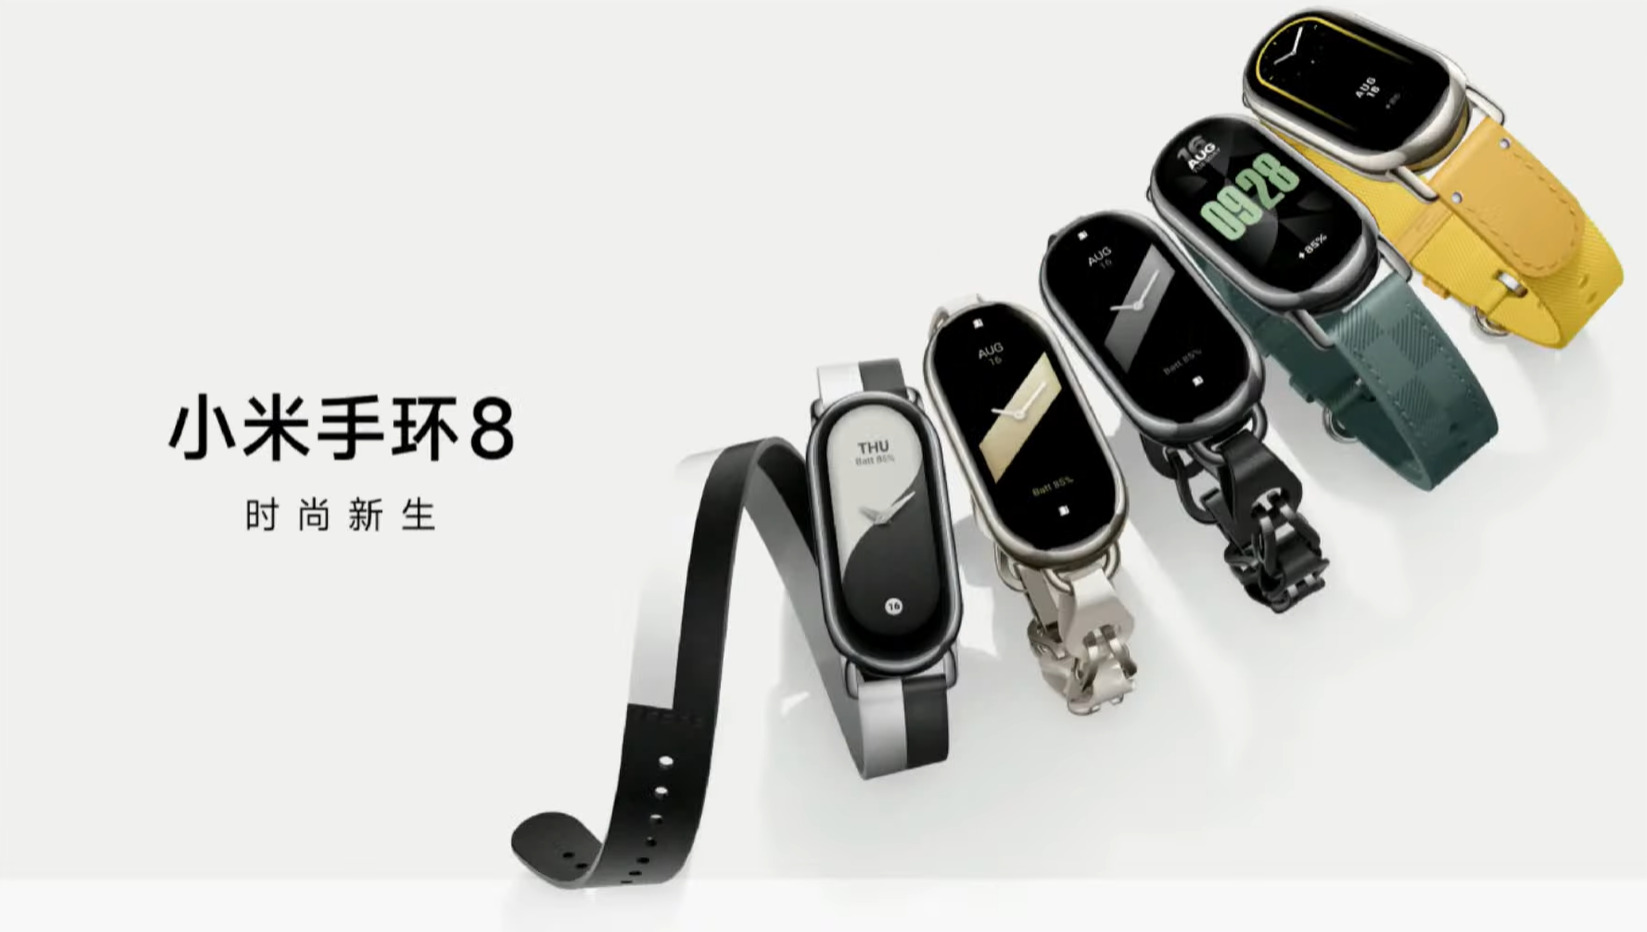 Xiaomi Smart Band 8, test et avis, À partir de 48,90 €